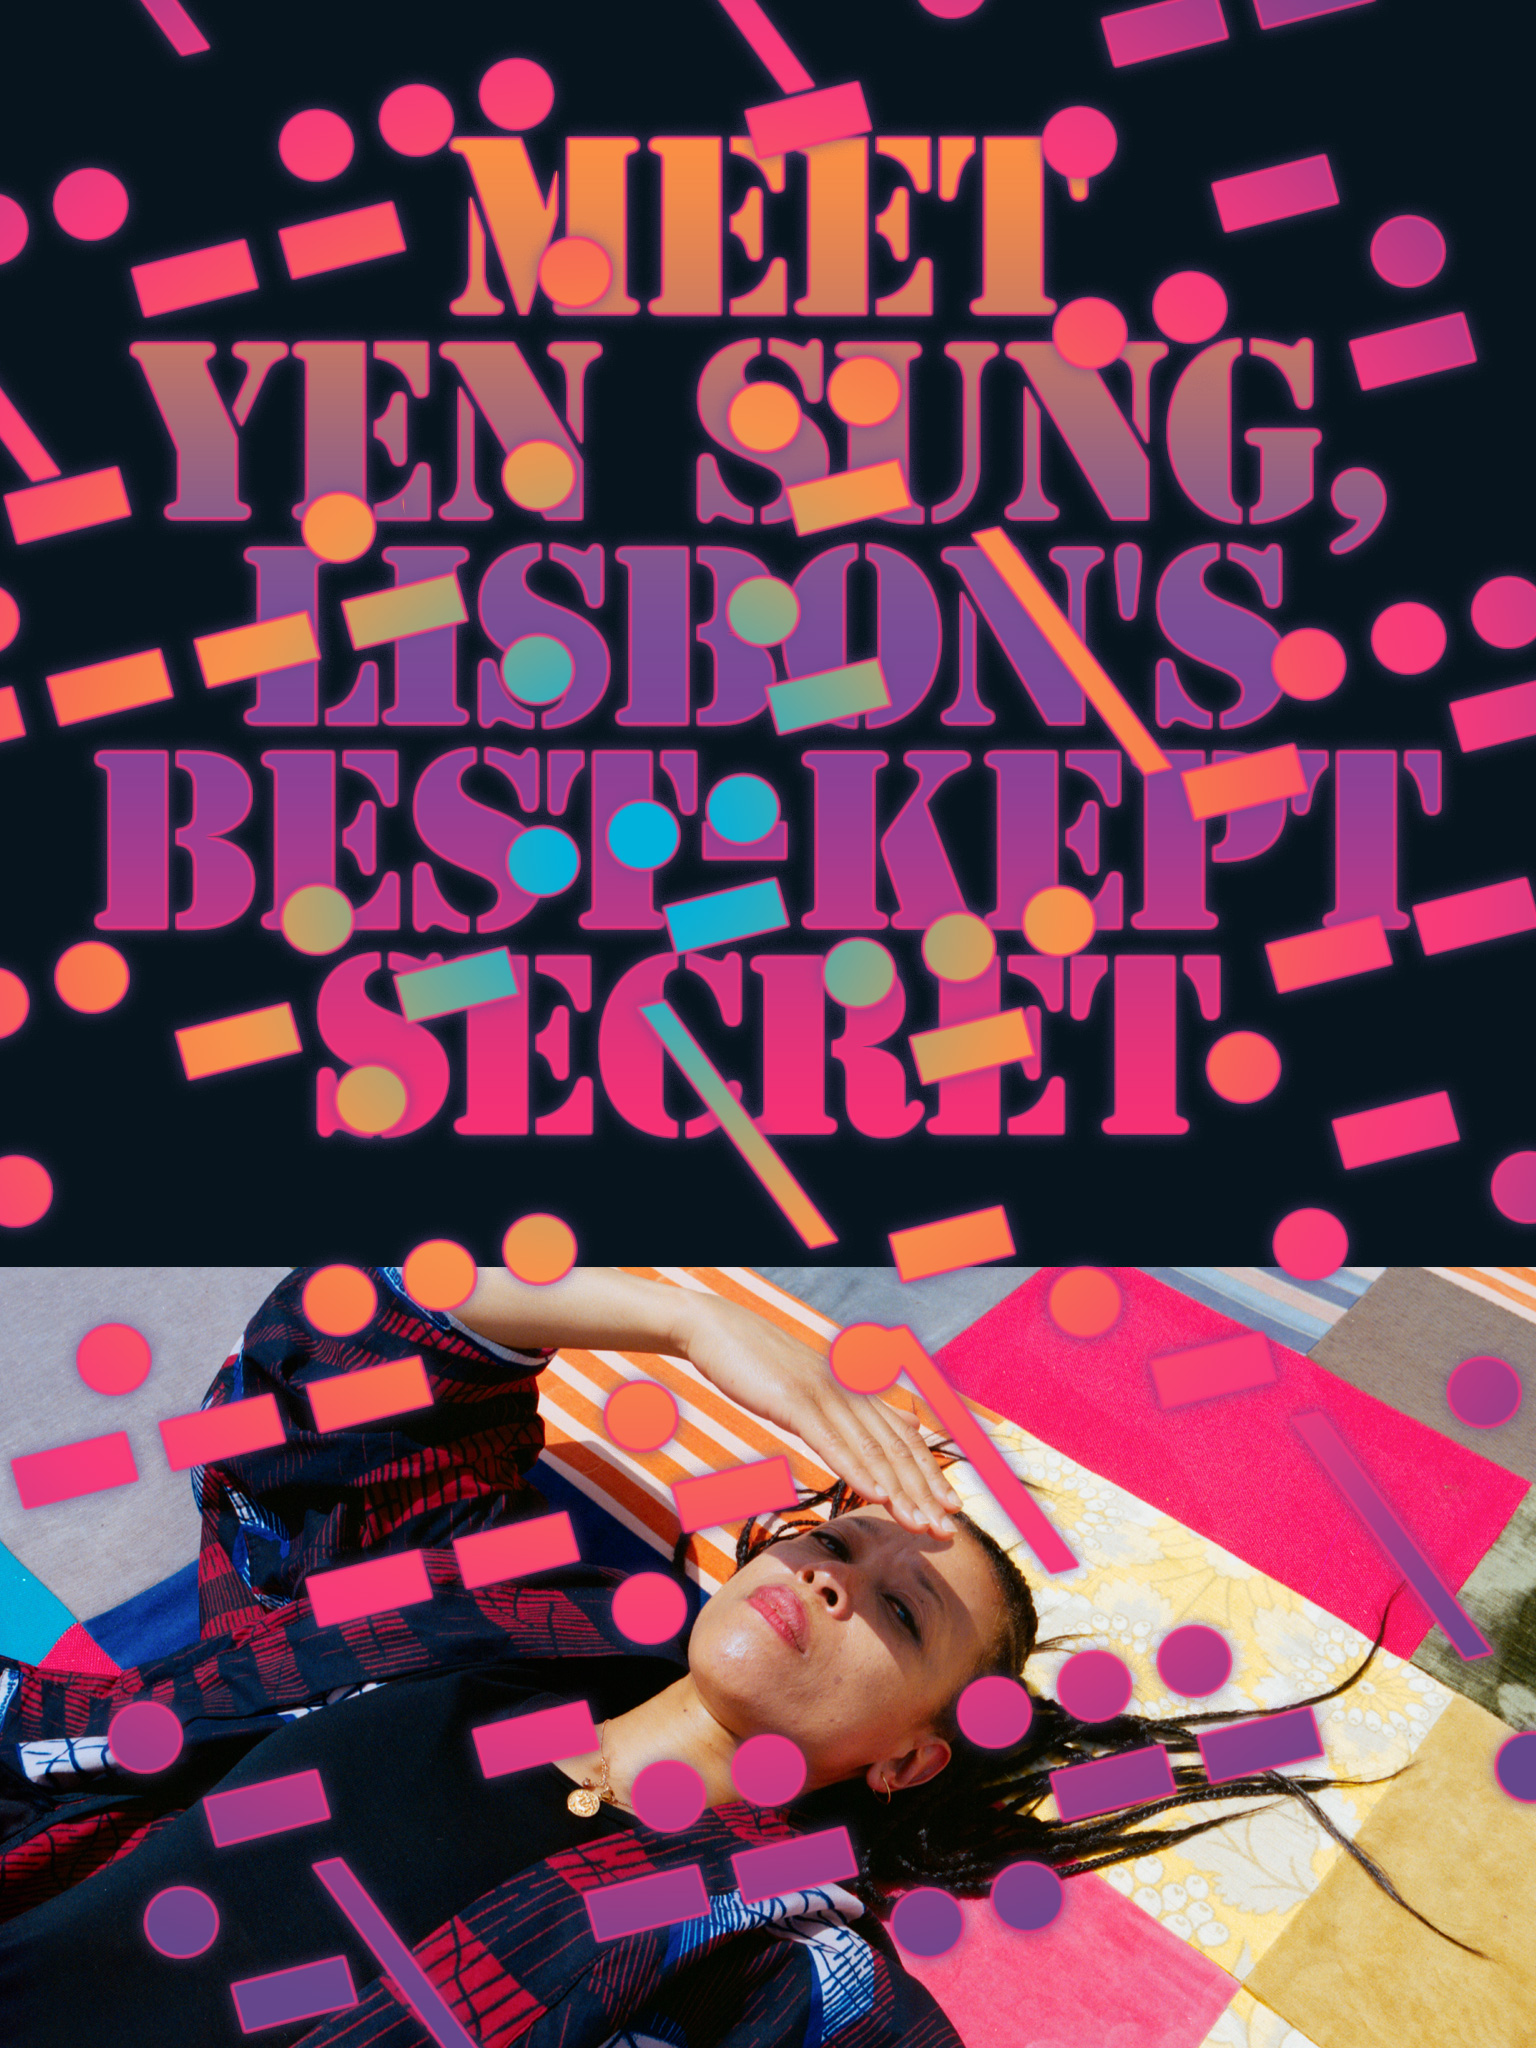 Meet Yen Sung, Lisbon's Best-Kept Secret